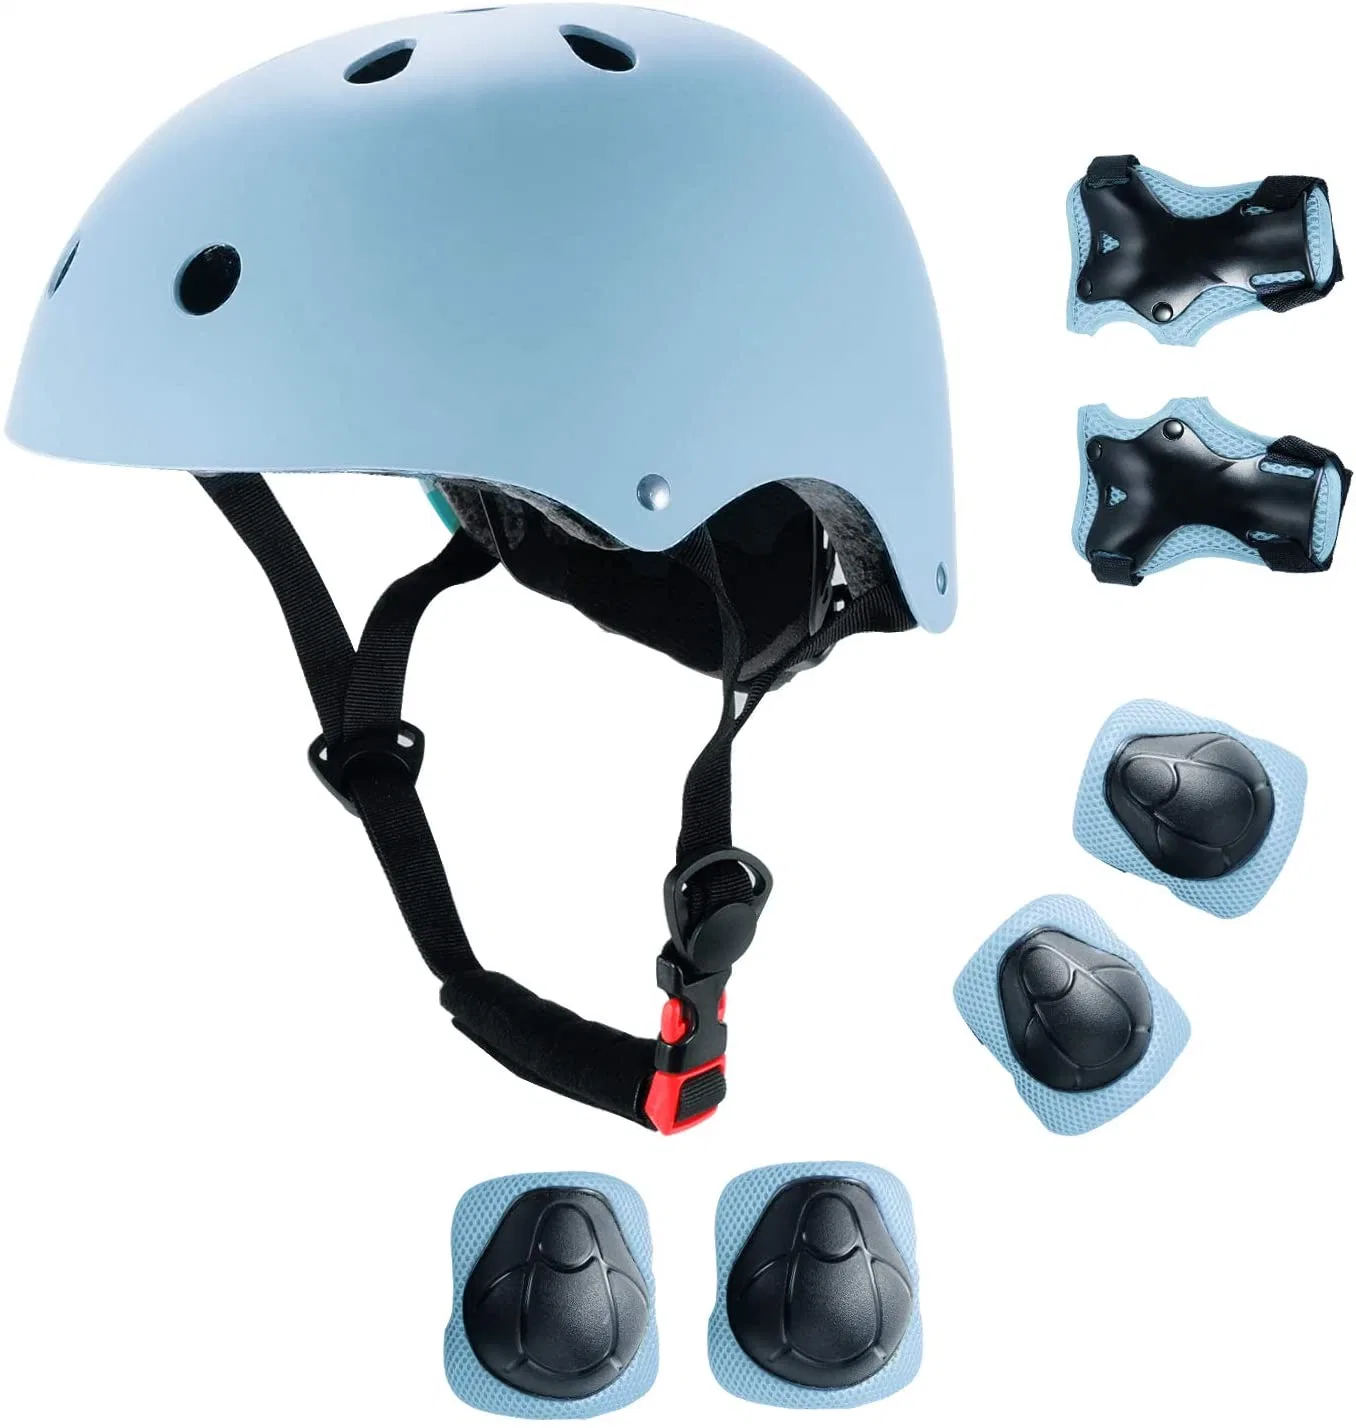 7PCS/cotovelo do conjunto de pastilhas de joelho Protetor de punho de skate Patins capacete de protecção para crianças